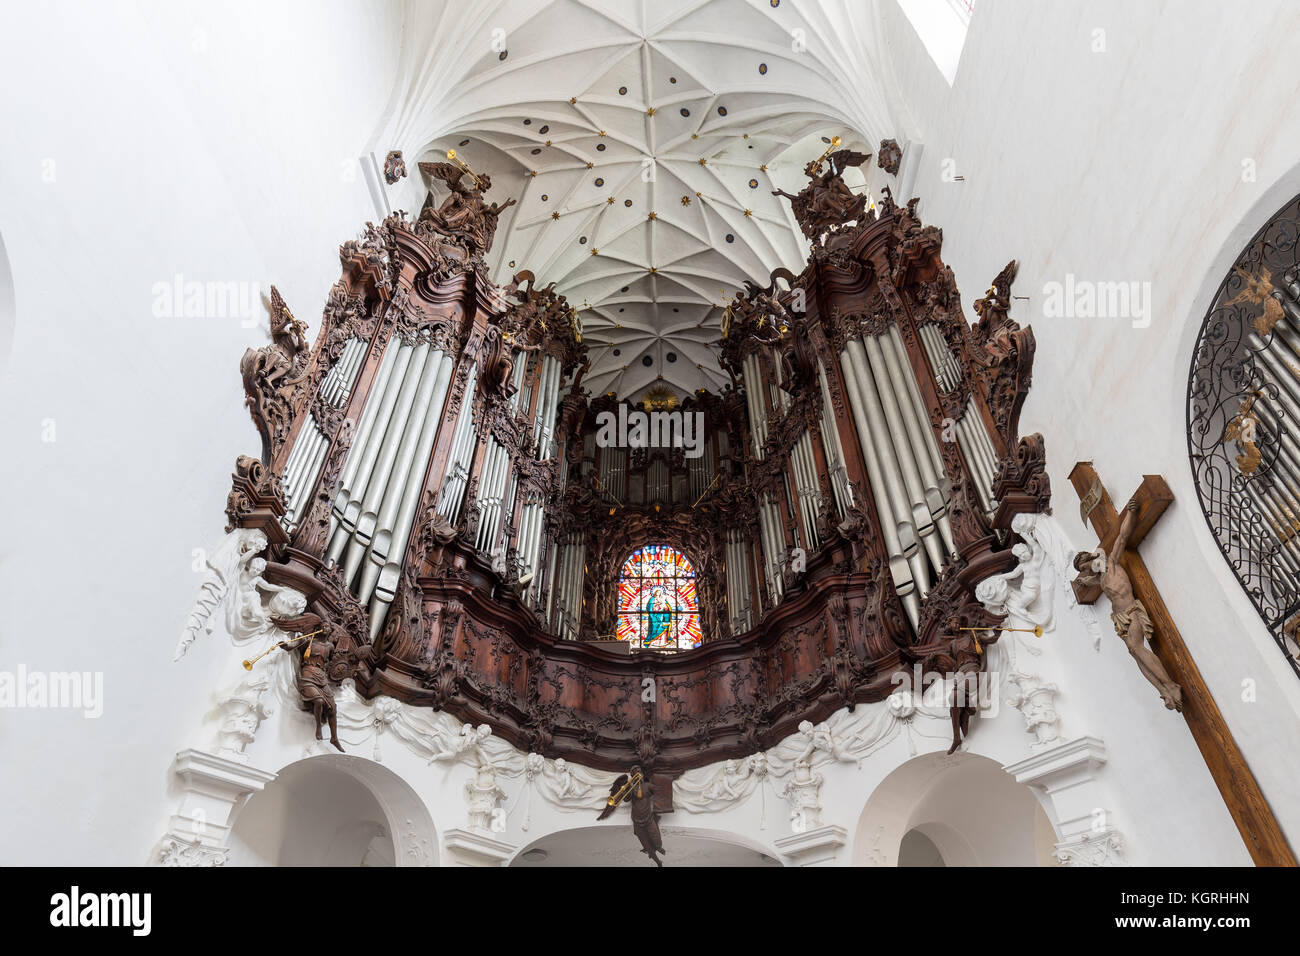 Große Orgel an der oliwa Oliwa archcathedral in Danzig, Polen, gesehen von unten. Stockfoto